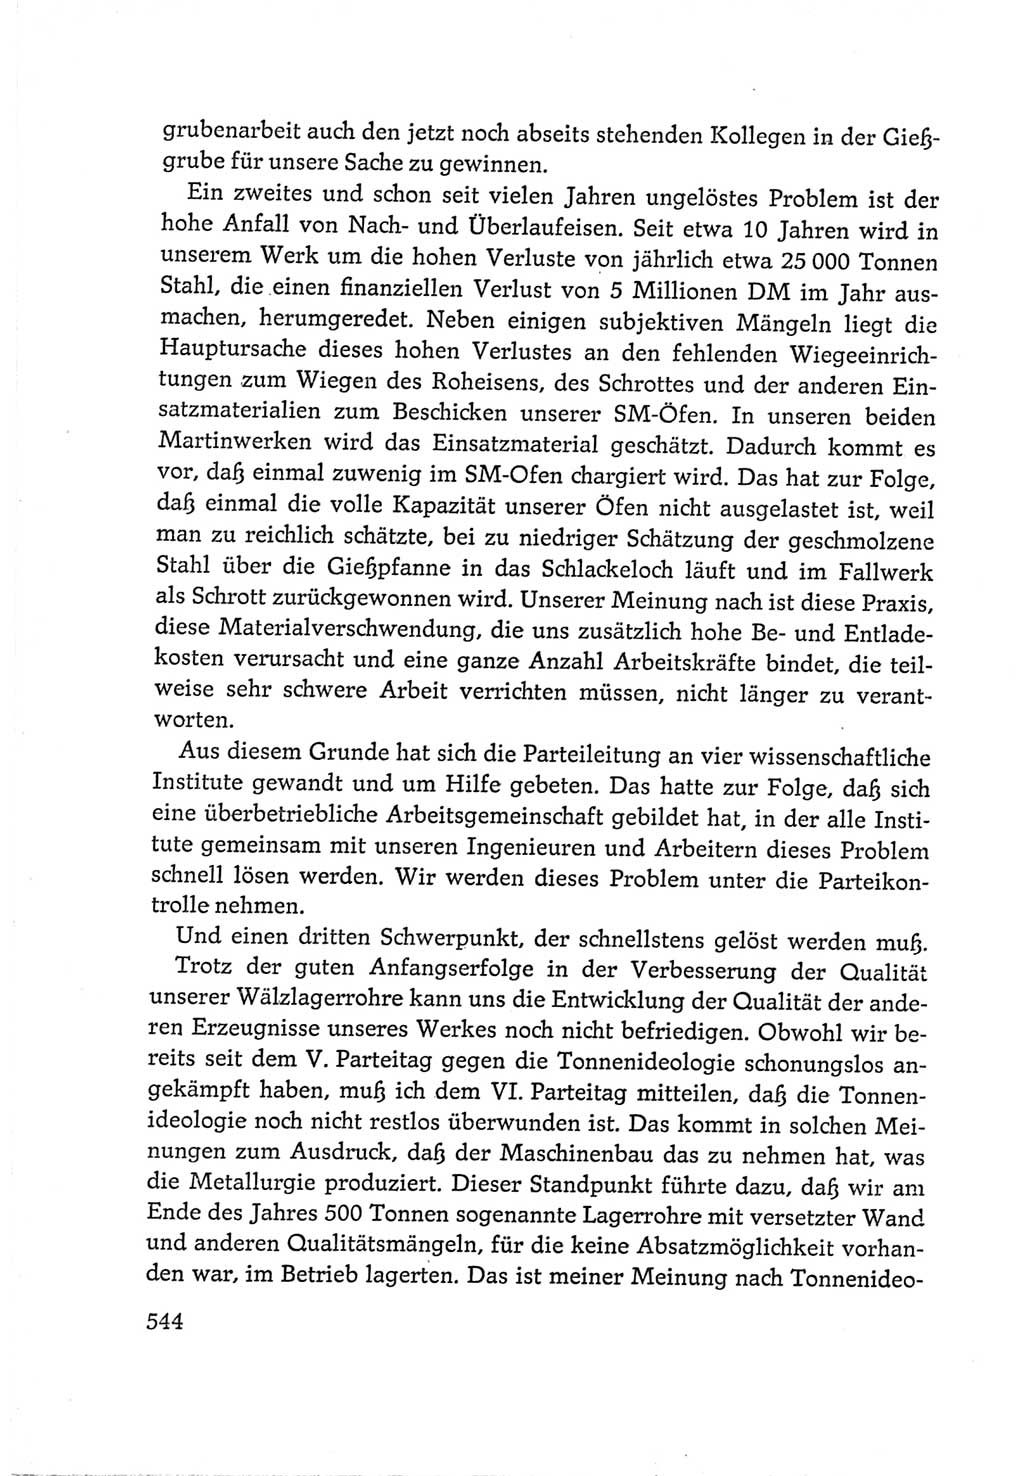 Protokoll der Verhandlungen des Ⅵ. Parteitages der Sozialistischen Einheitspartei Deutschlands (SED) [Deutsche Demokratische Republik (DDR)] 1963, Band Ⅲ, Seite 544 (Prot. Verh. Ⅵ. PT SED DDR 1963, Bd. Ⅲ, S. 544)